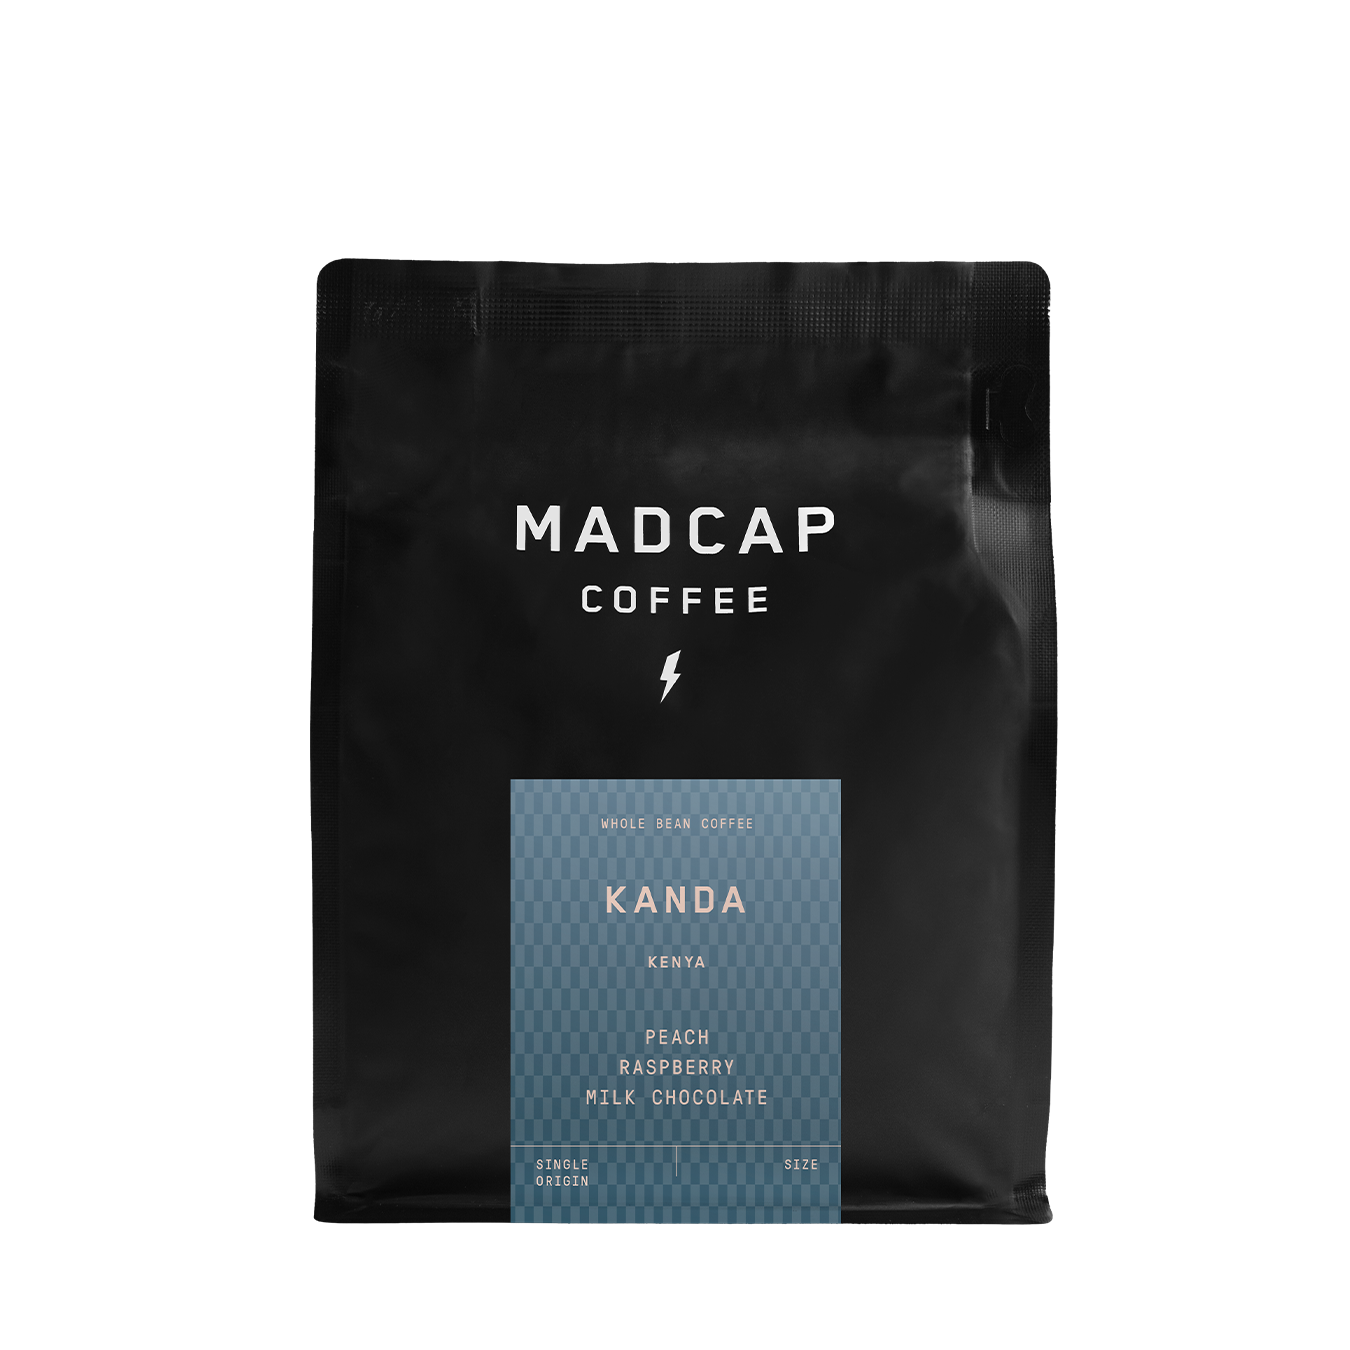 Retail bag of Kanda Kenya coffee